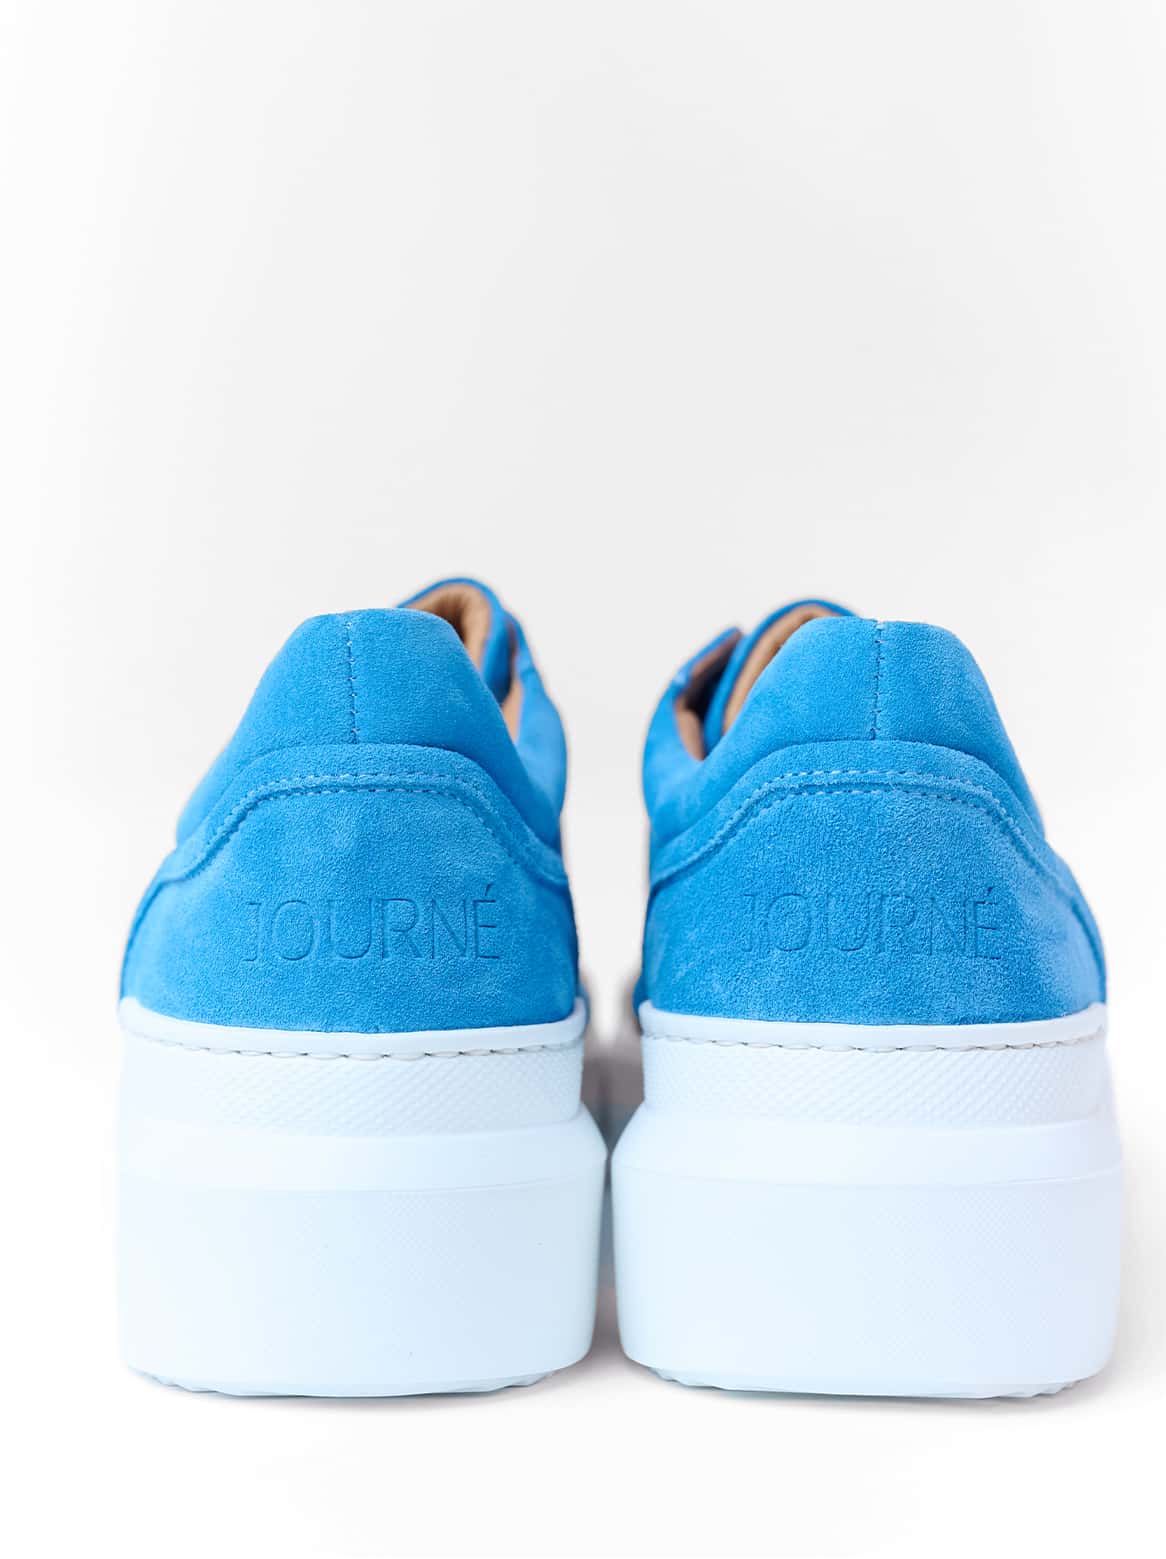 Journé Velour Sneaker Blau